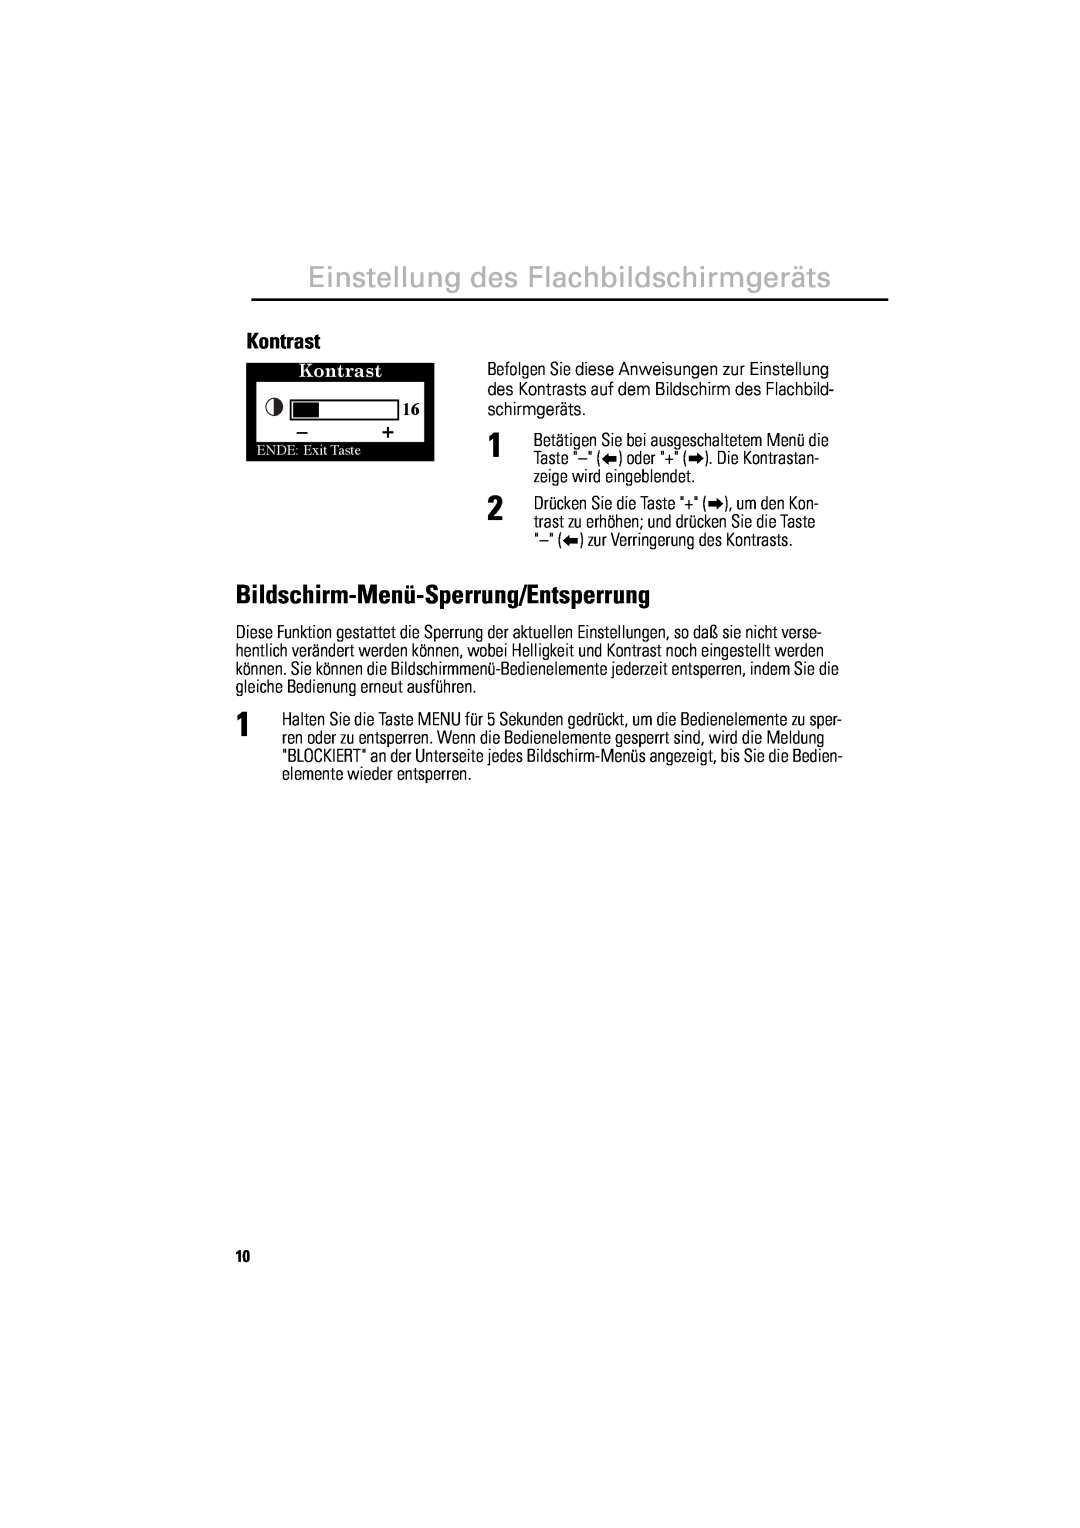 Samsung 800TFT manual Bildschirm-Menü-Sperrung/Entsperrung, zeige wird eingeblendet, zur Verringerung des Kontrasts 